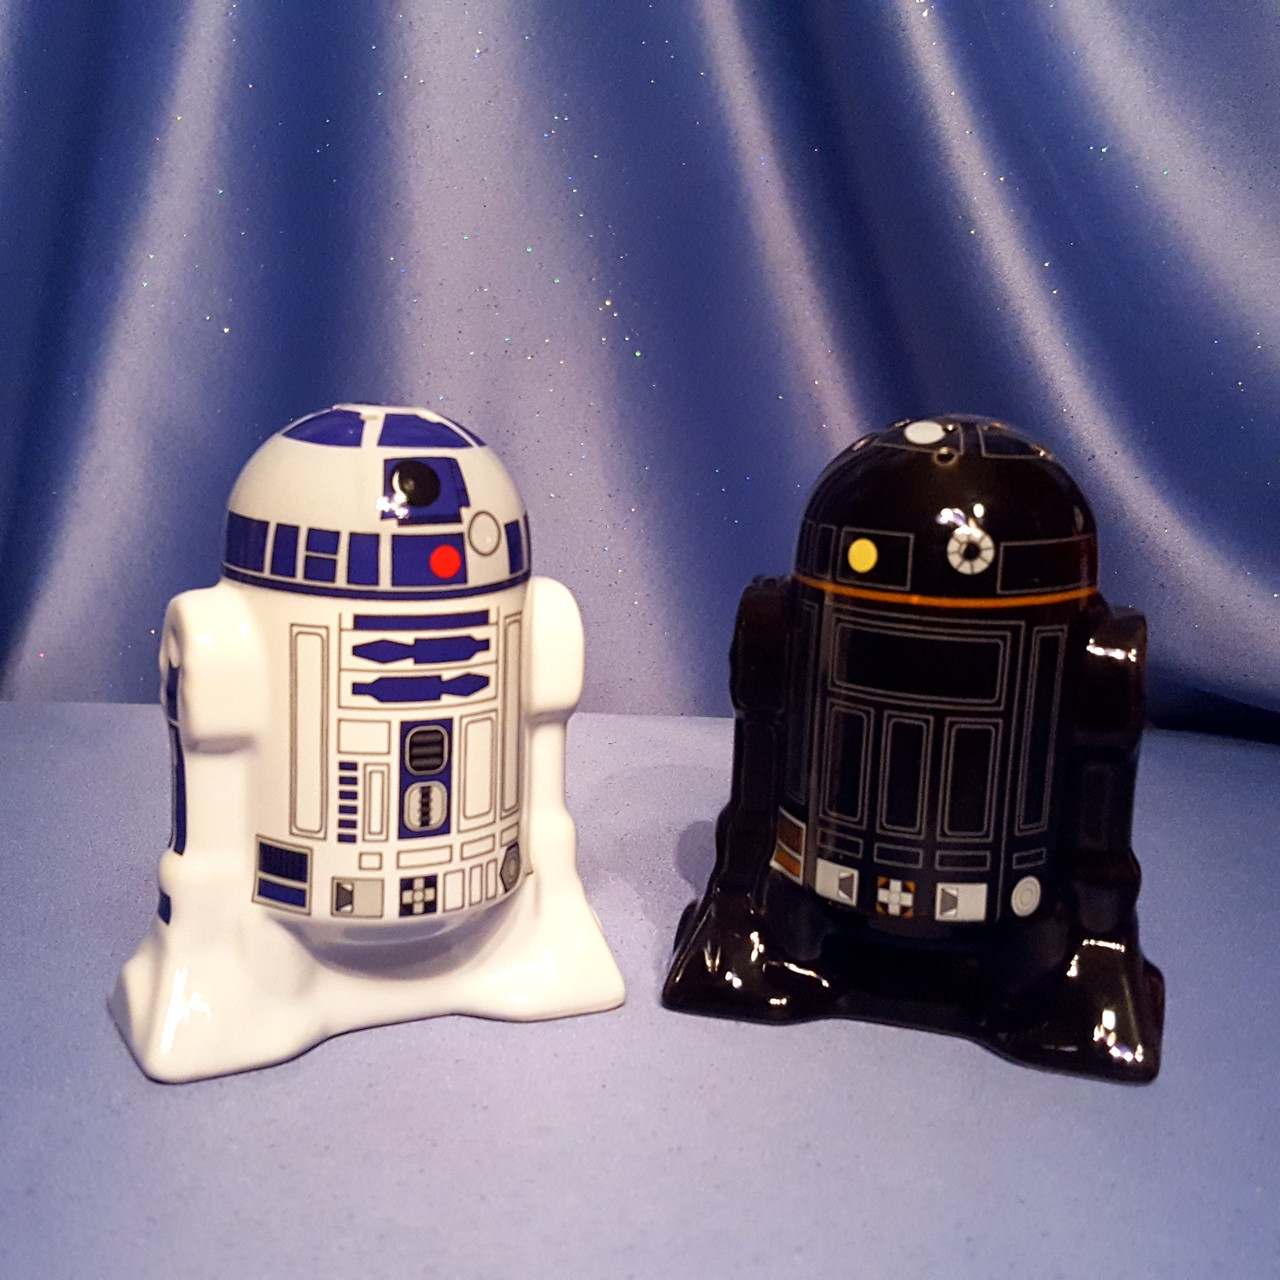 Star Wars R2-D2 & R2-Q5 Salt & Pepper Shaker Set by Underground Toys -  Disney. - Now and Then Galleria LLC